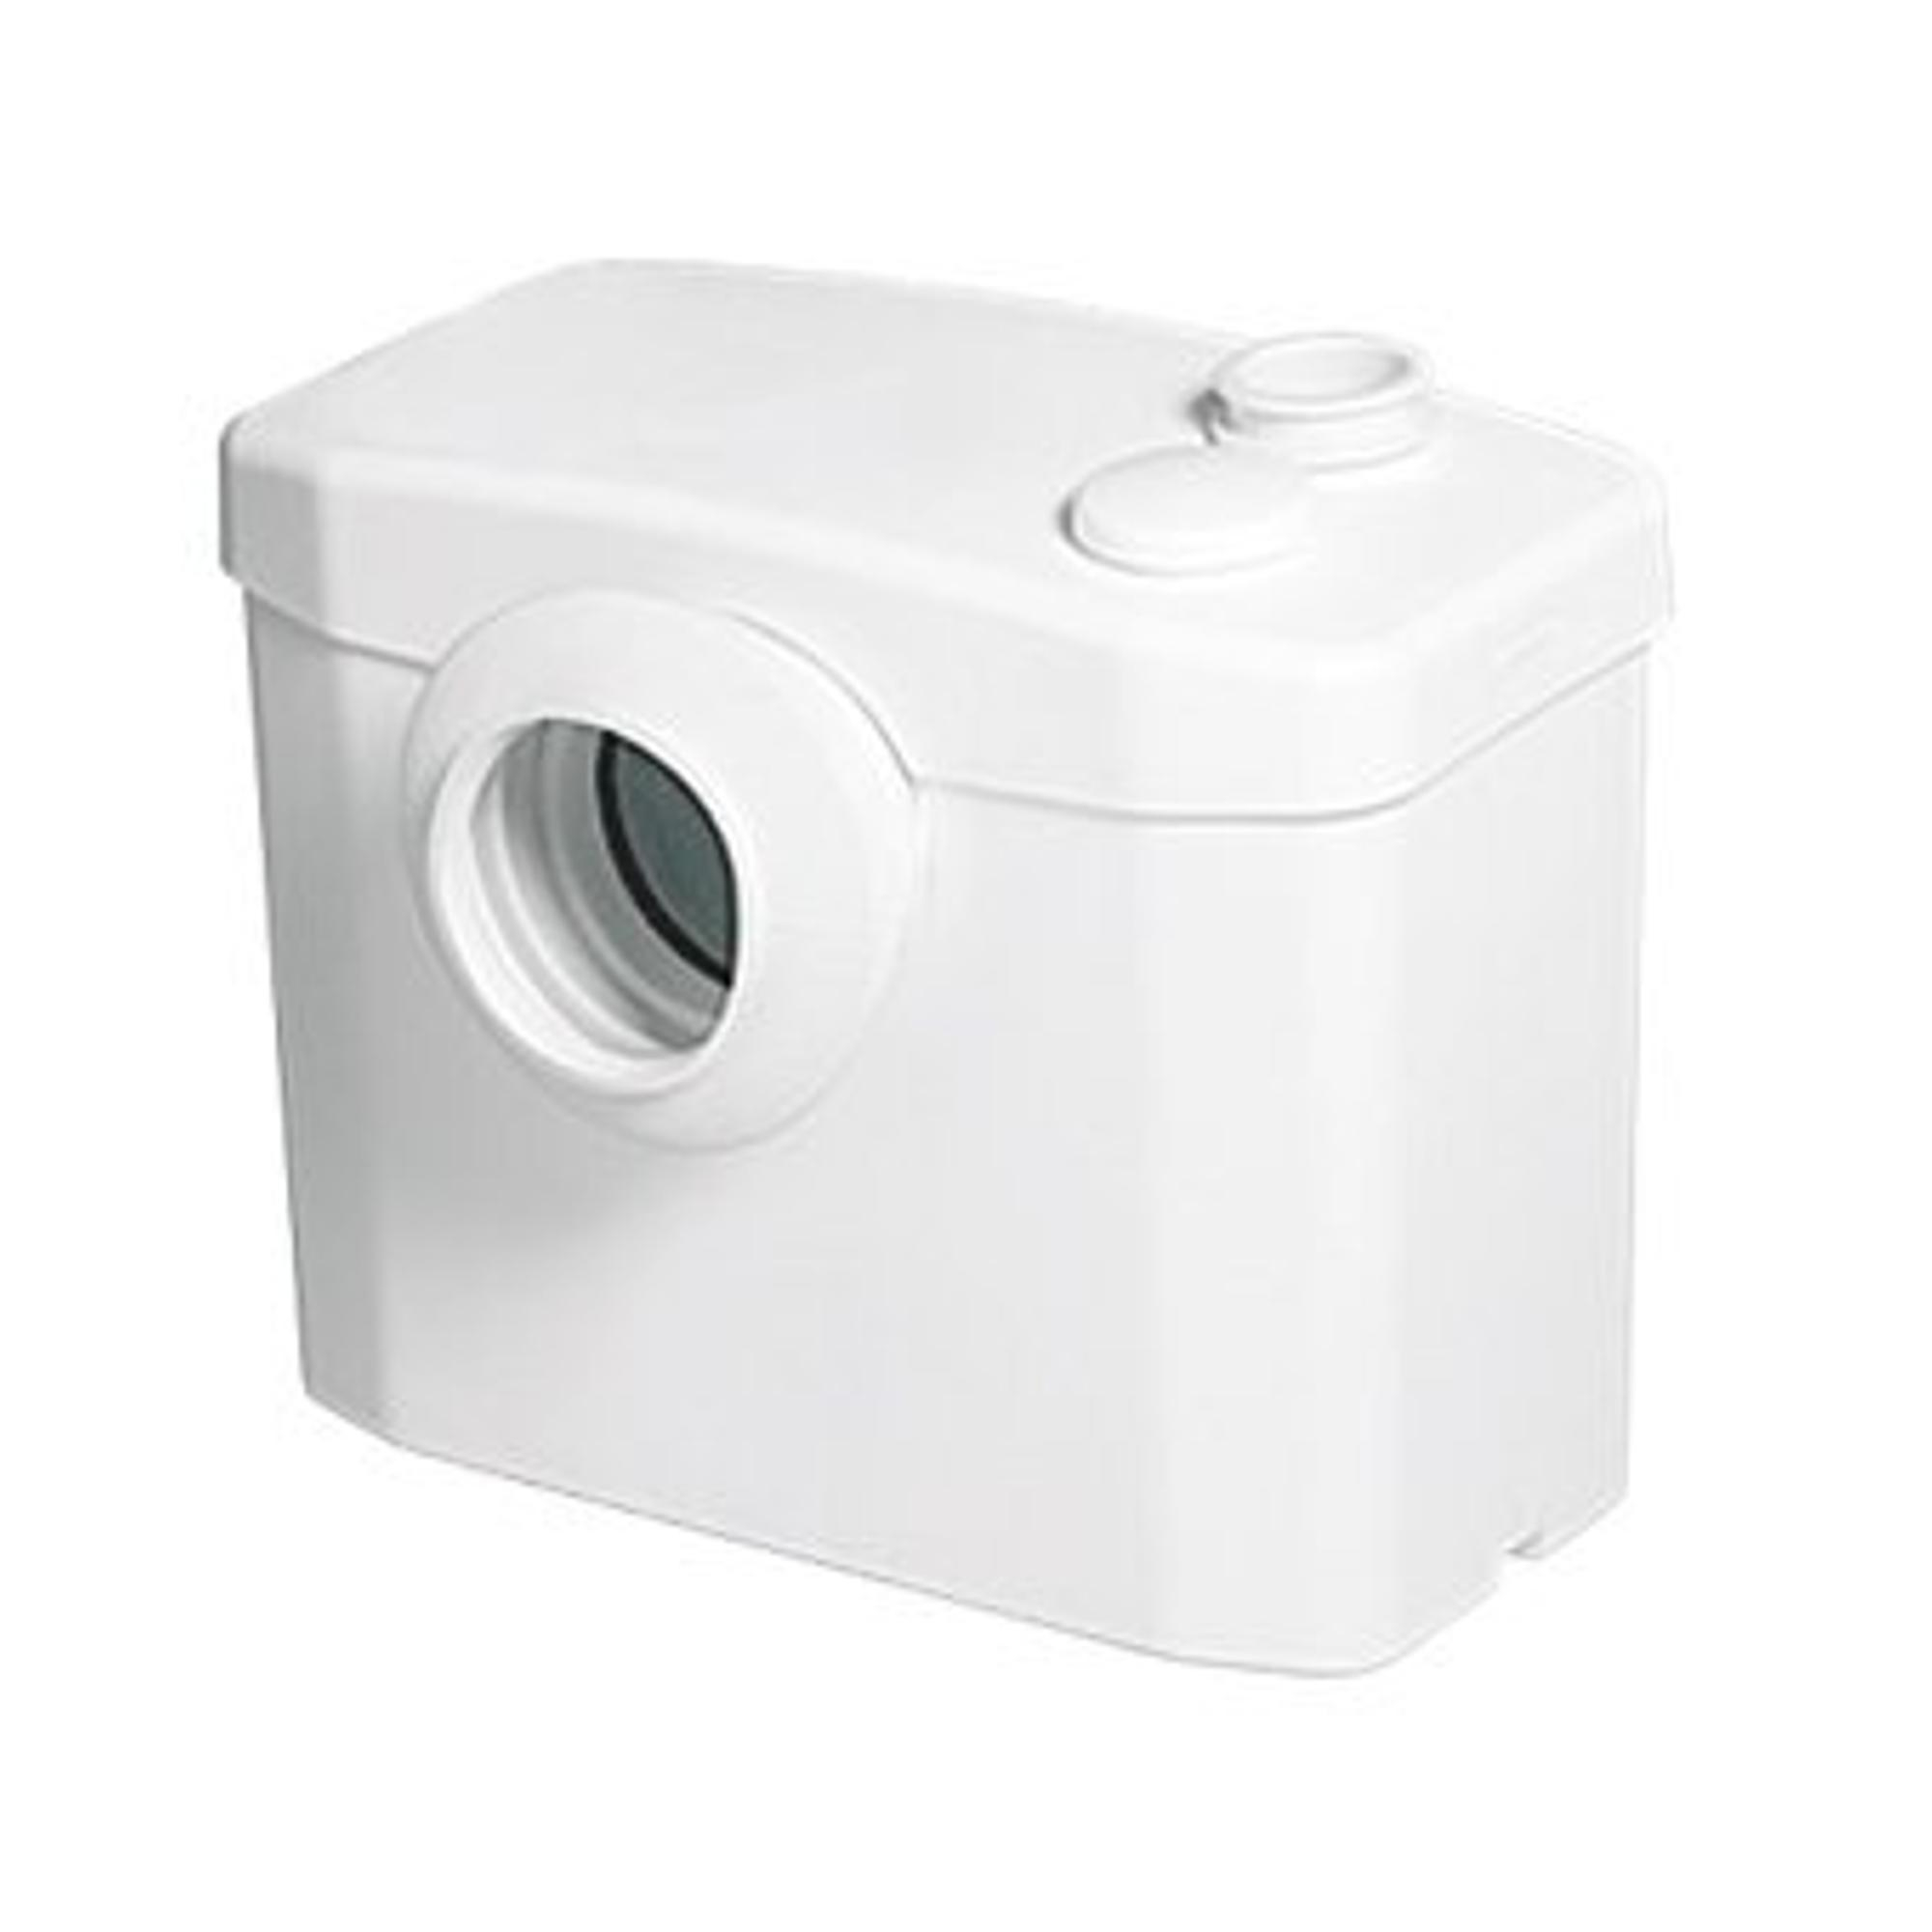 Sanibroyeur Sanibroyeur X2 Broyeur sanitaire pour WC hauteur de charge 4m  ou 50m en horizontal Blanc - 005010 